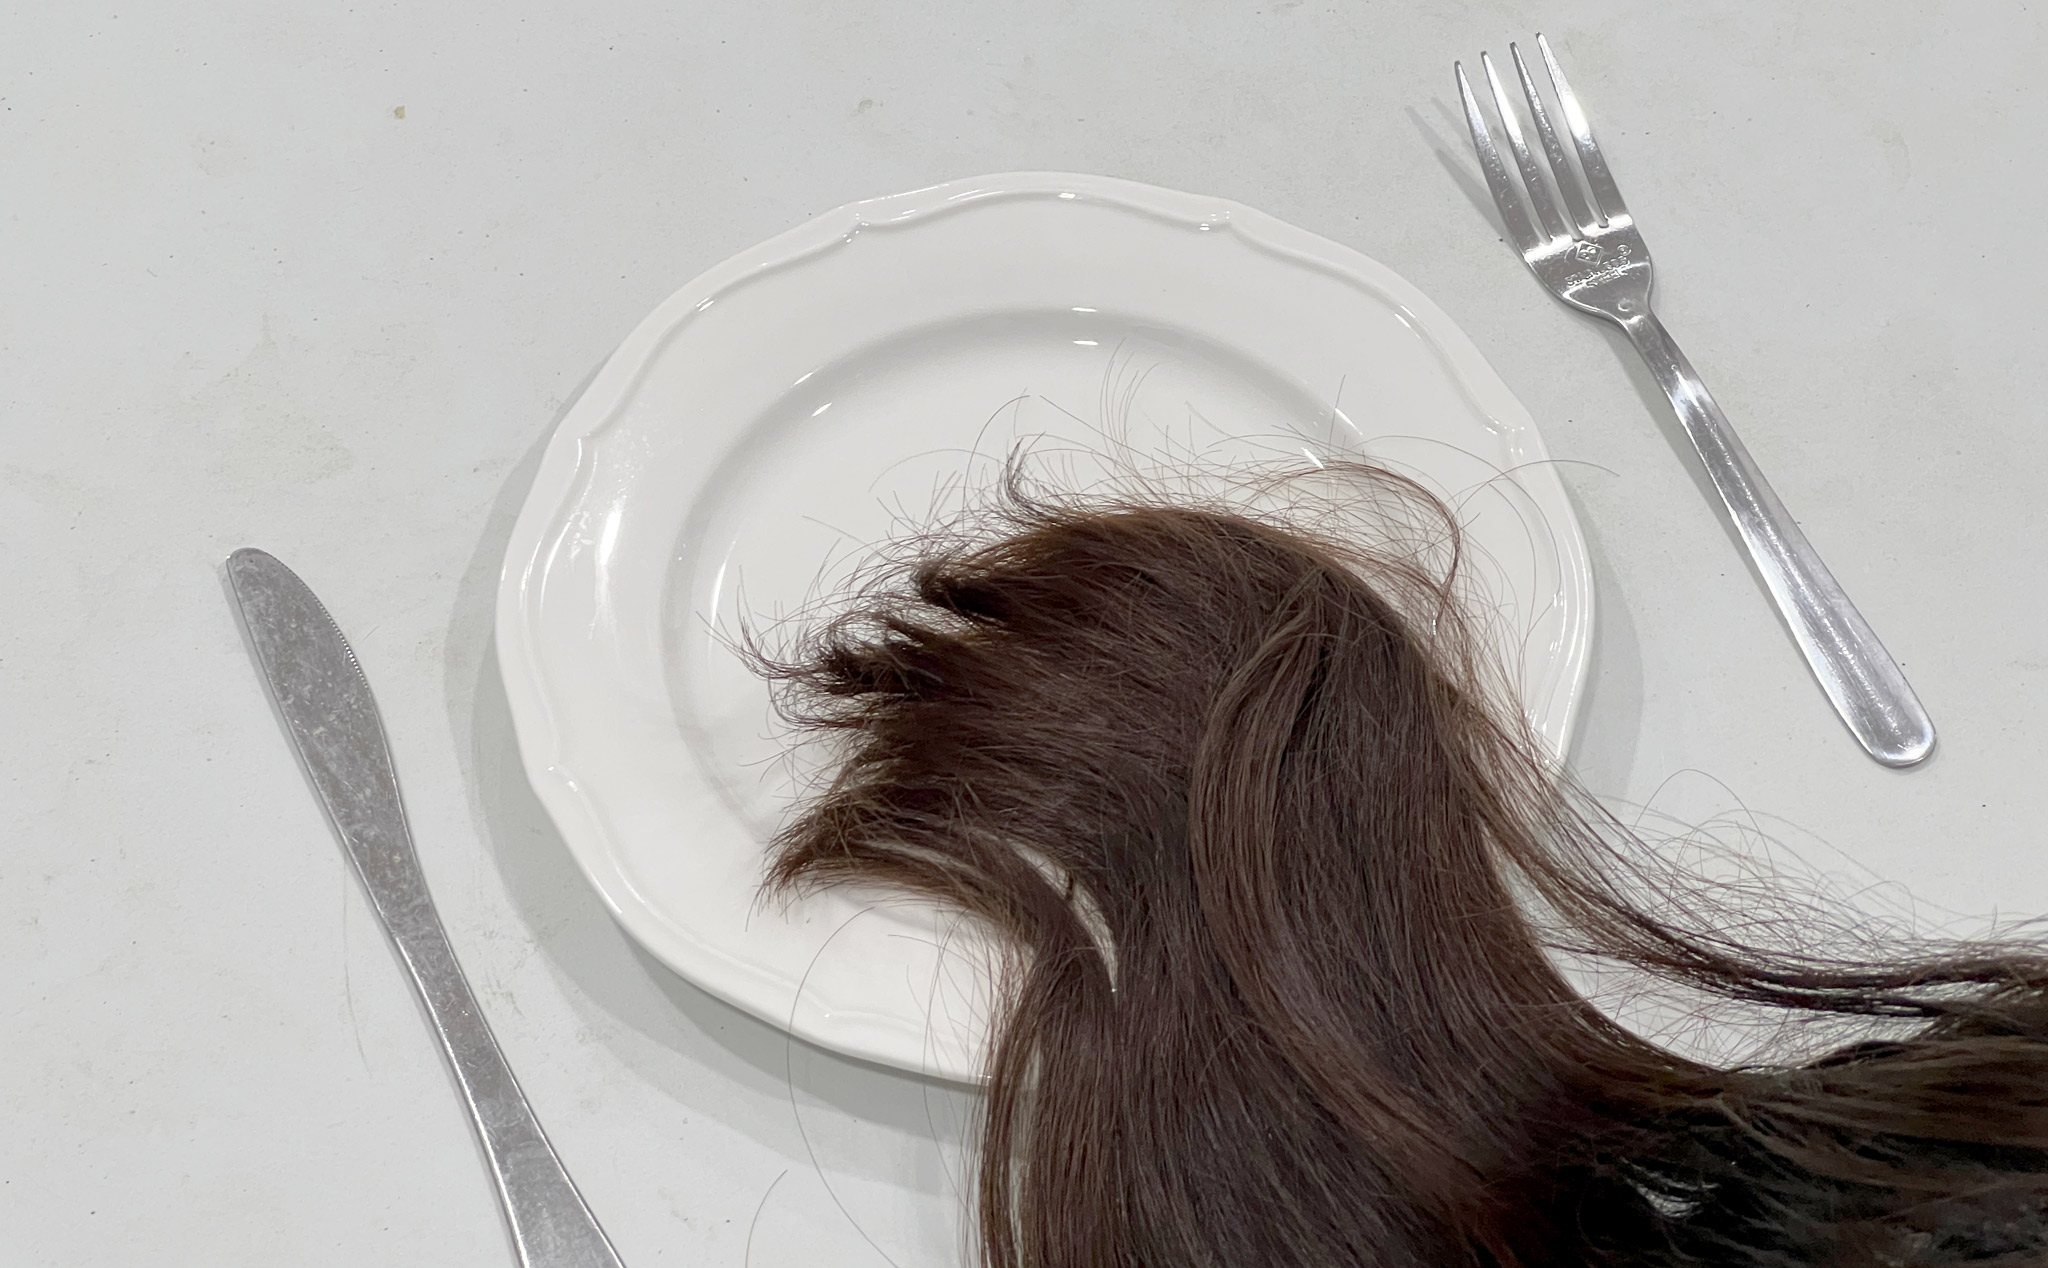 Anh em phản ứng thế nào khi phát hiện tóc trong đồ ăn ở quán khi đang ăn?